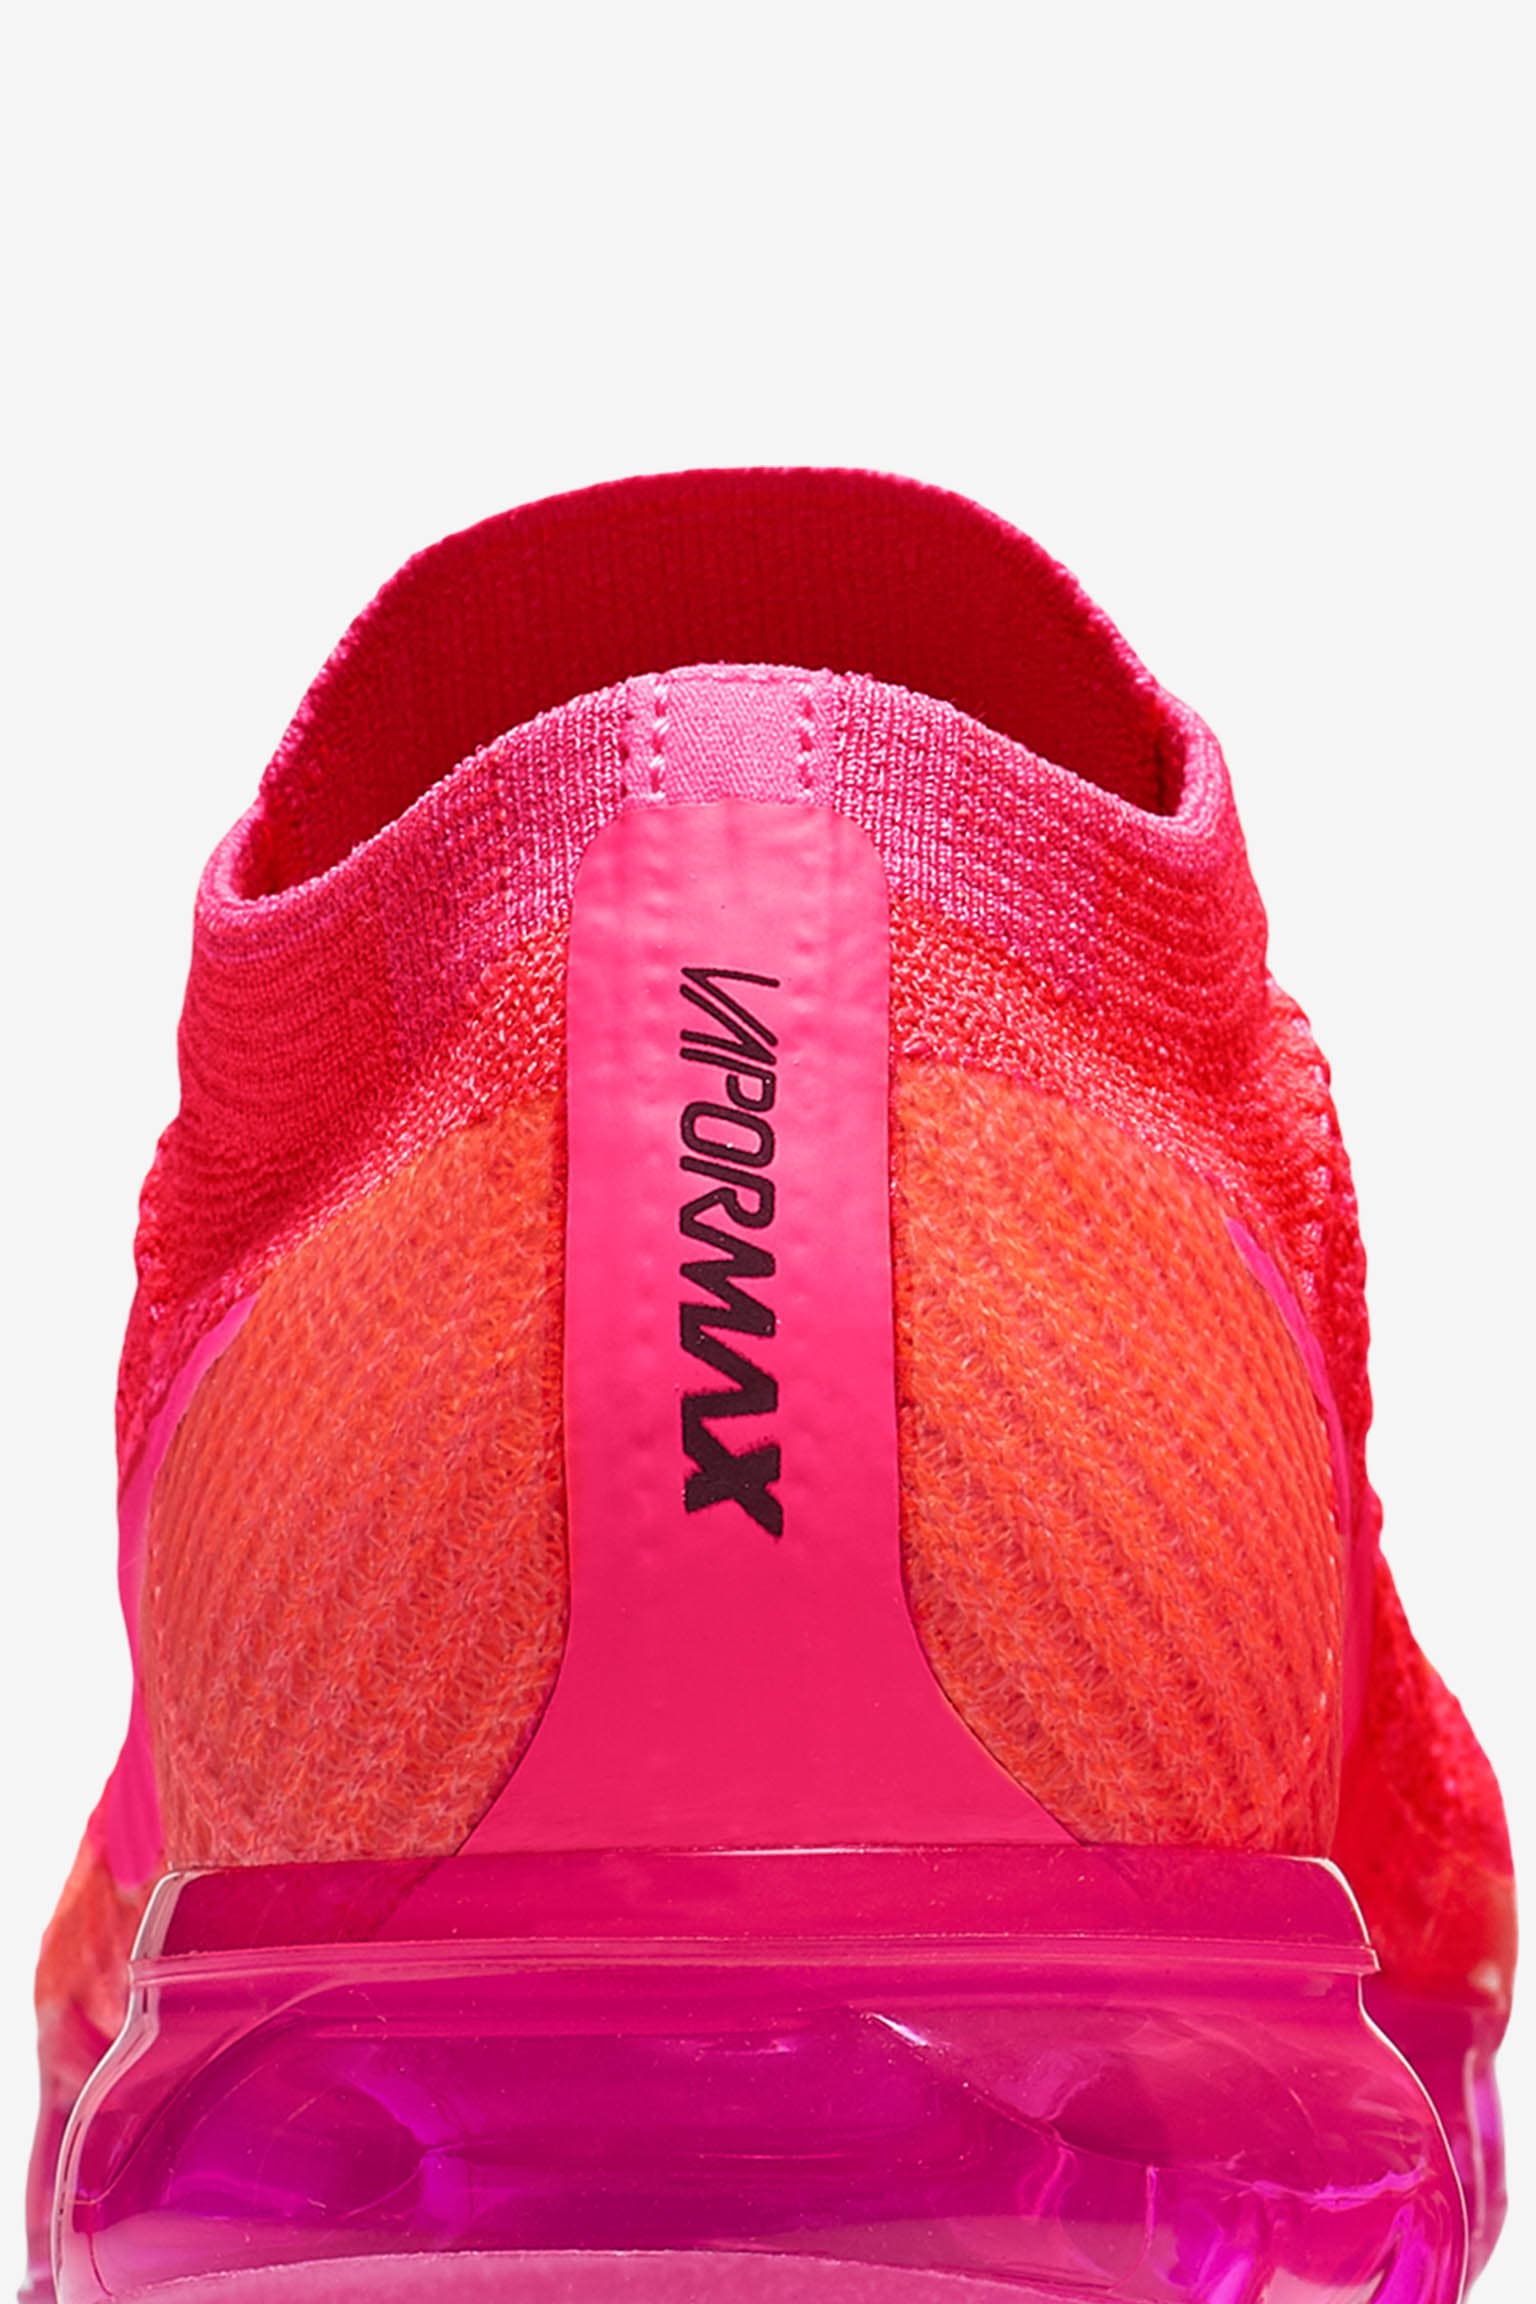 vapormax hot pink